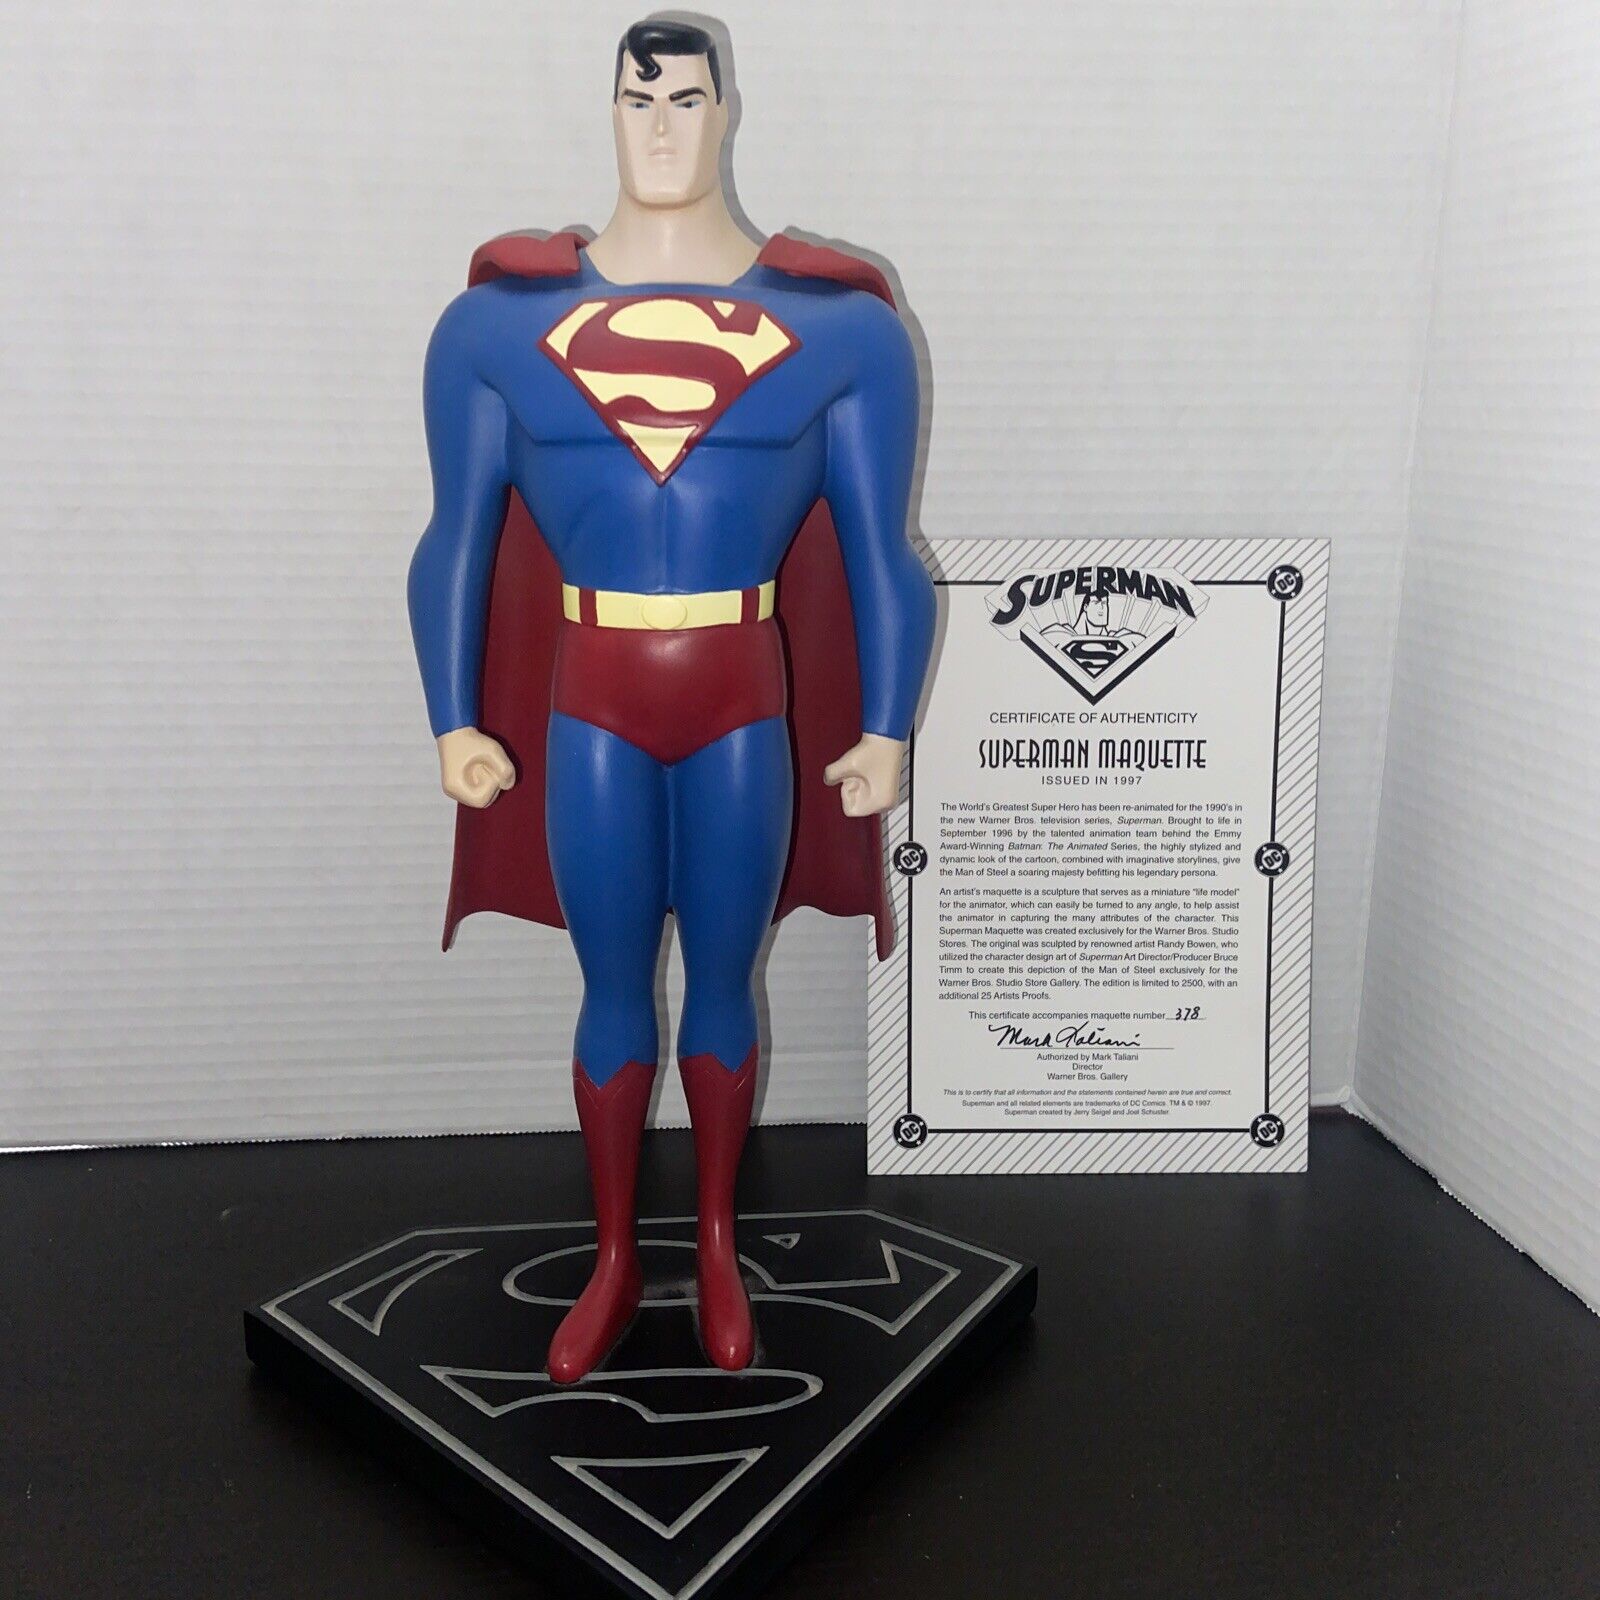 Superman Animated Series Comic Book Statue WB LTD ED Maquette